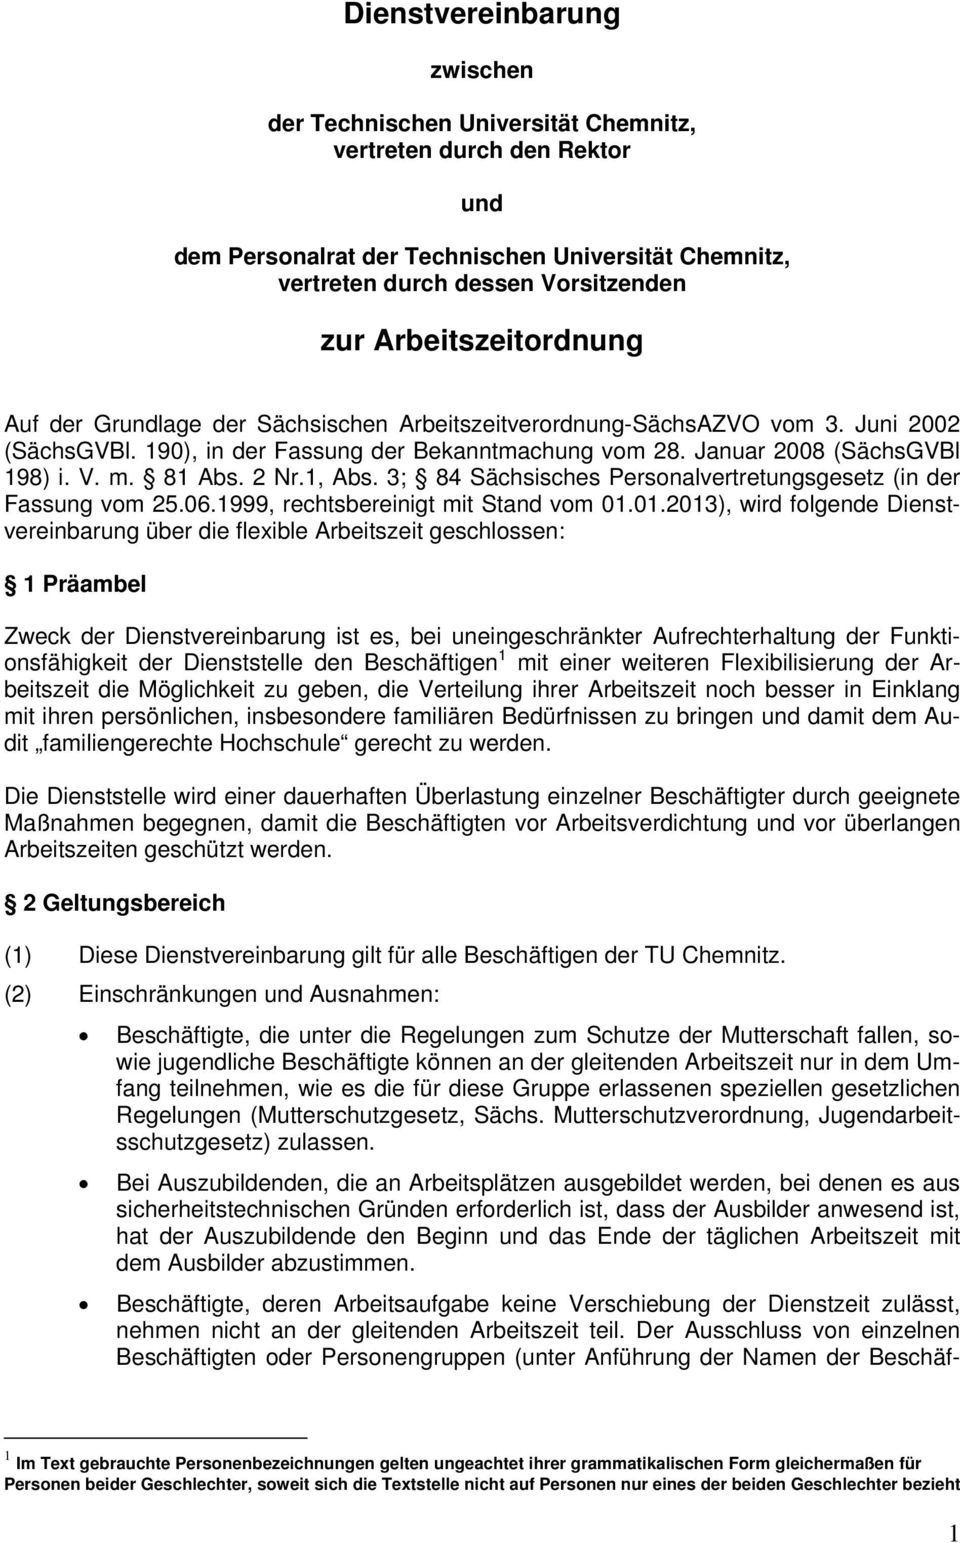 81 Abs. 2 Nr.1, Abs. 3; 84 Sächsisches Personalvertretungsgesetz (in der Fassung vom 25.06.1999, rechtsbereinigt mit Stand vom 01.